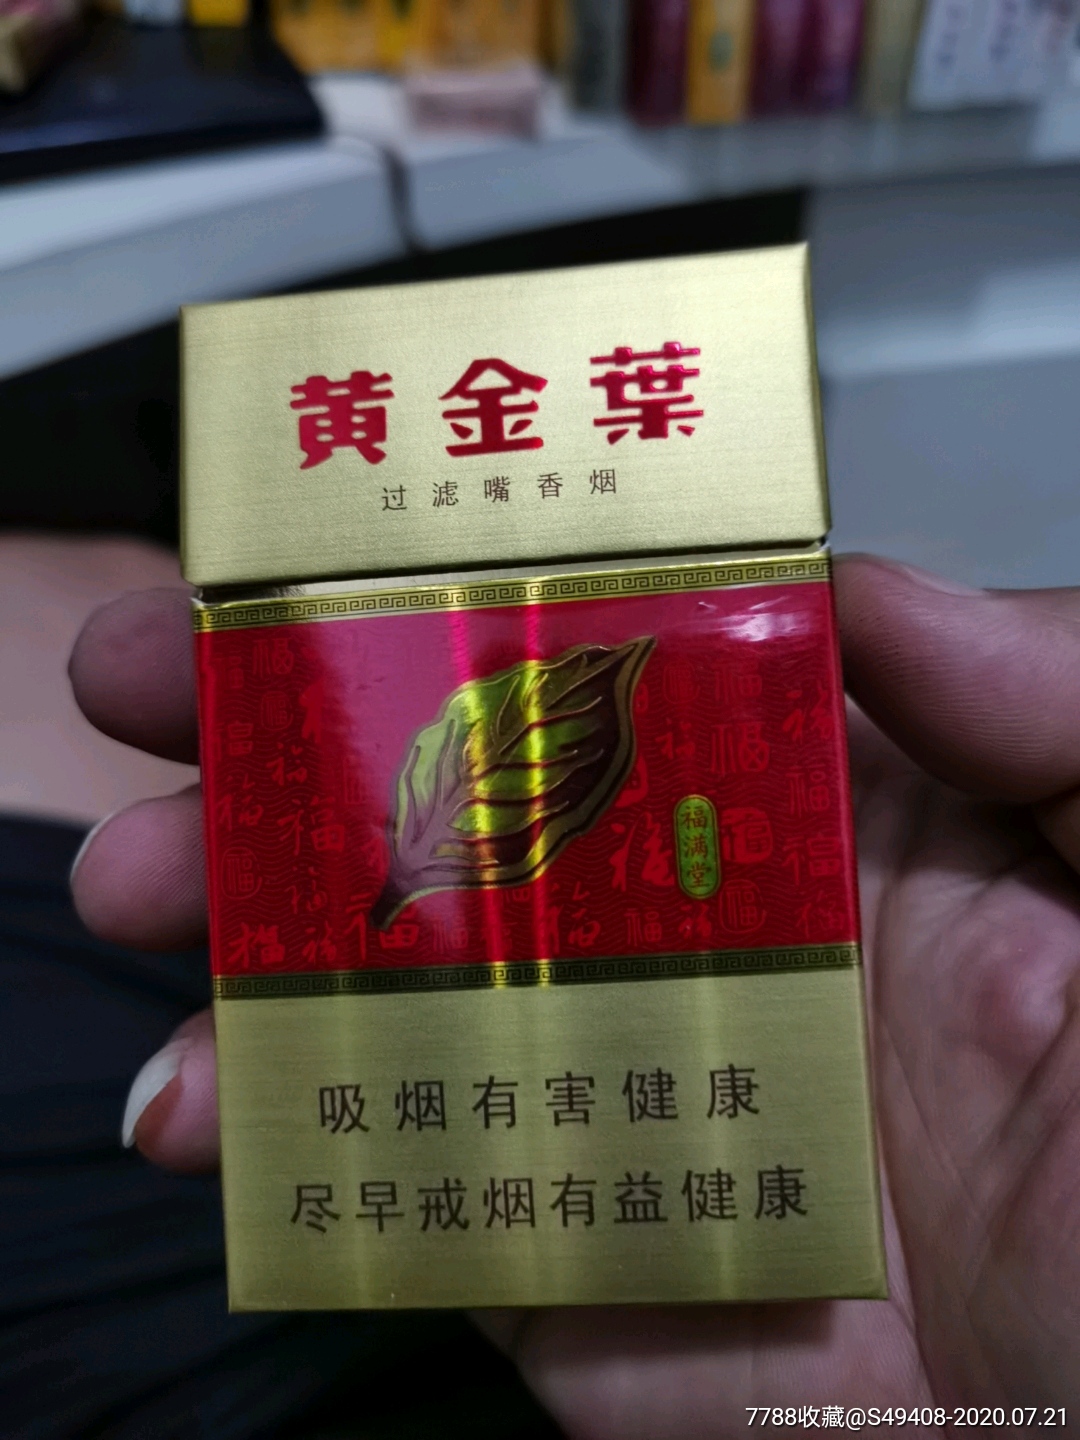 黄金叶香烟 烟盒图片